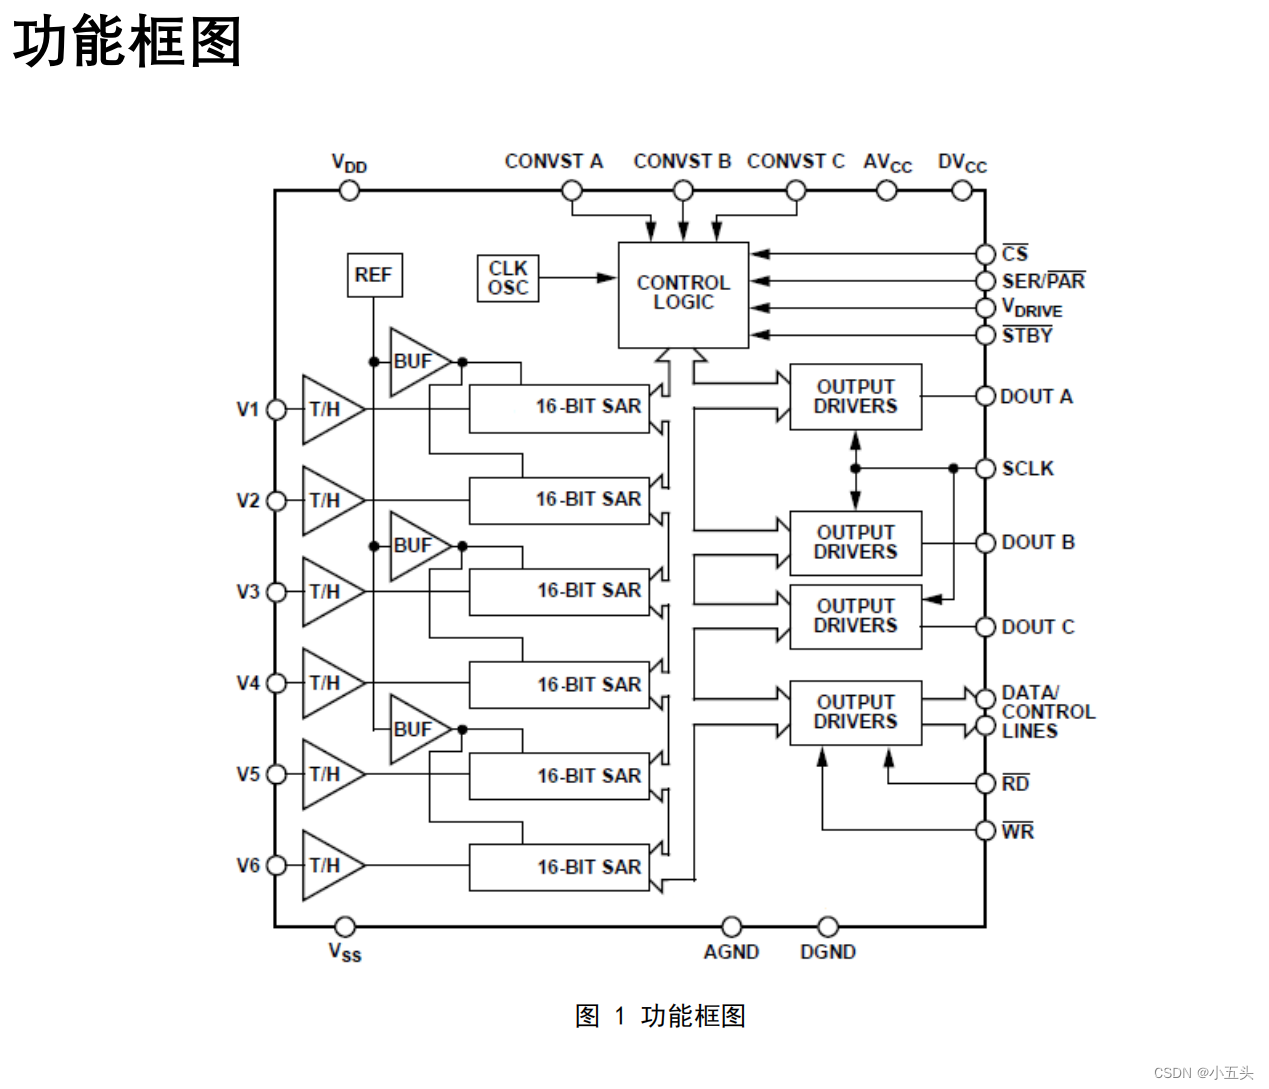 中科亿海微-CL1656功能验证开发板